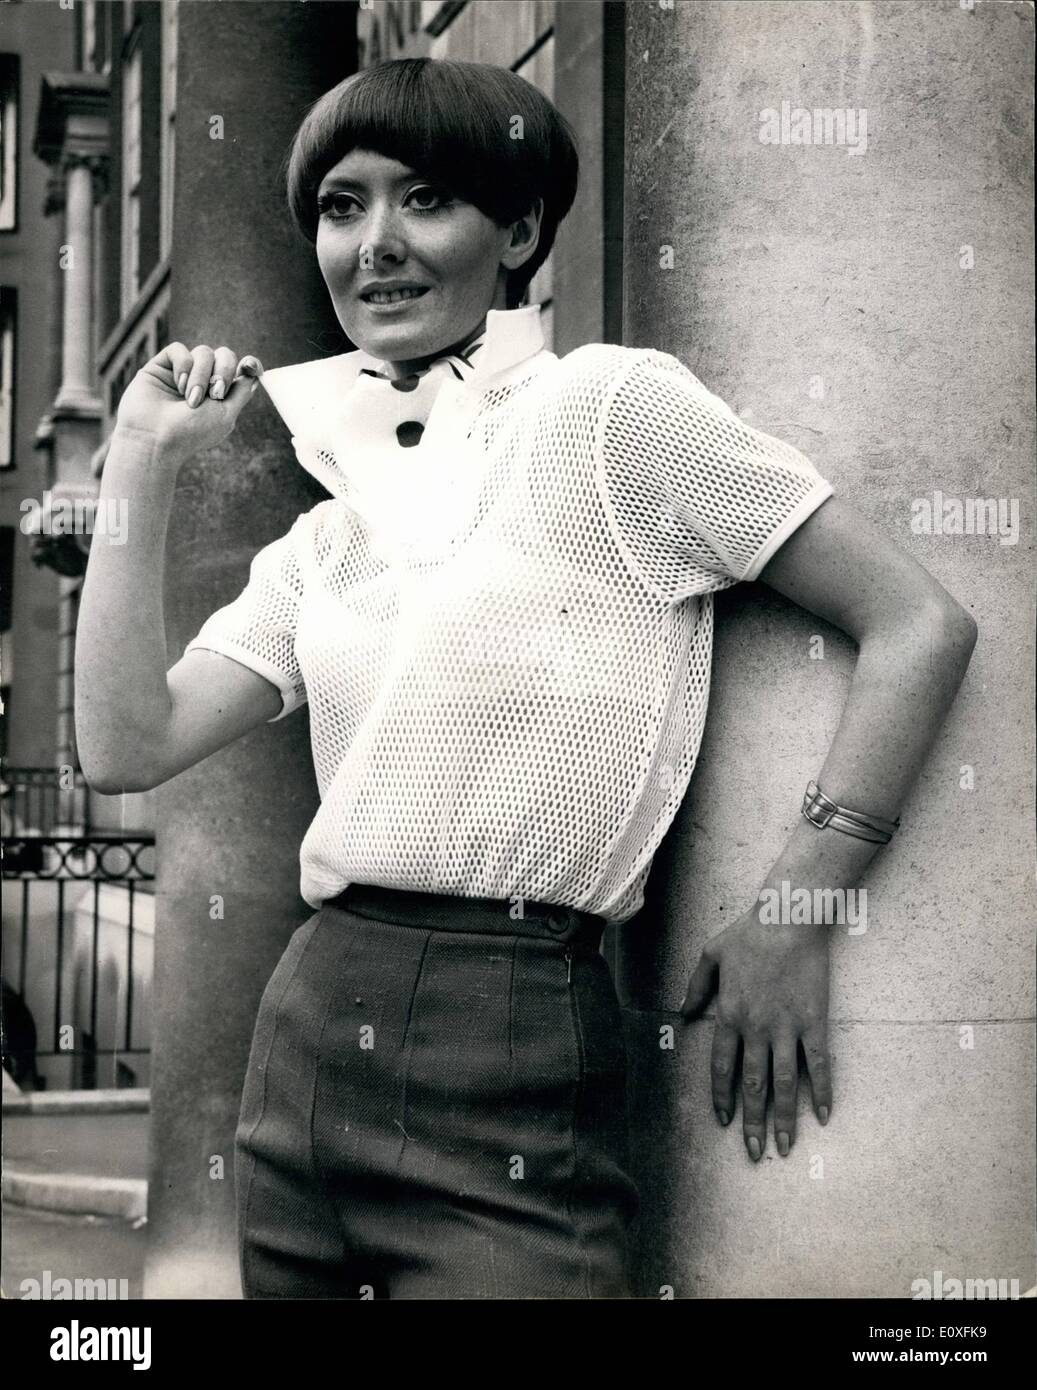 Septembre 09, 1966 - hommes et femmes Pulls Fashion Show : Photo montre Dubois porte une chemise en coton blanc à mailles d'aujourd'hui Hommes et femmes pulls fashion show par Morley à l'agriculture, la chambre de Knightsbridge. Banque D'Images